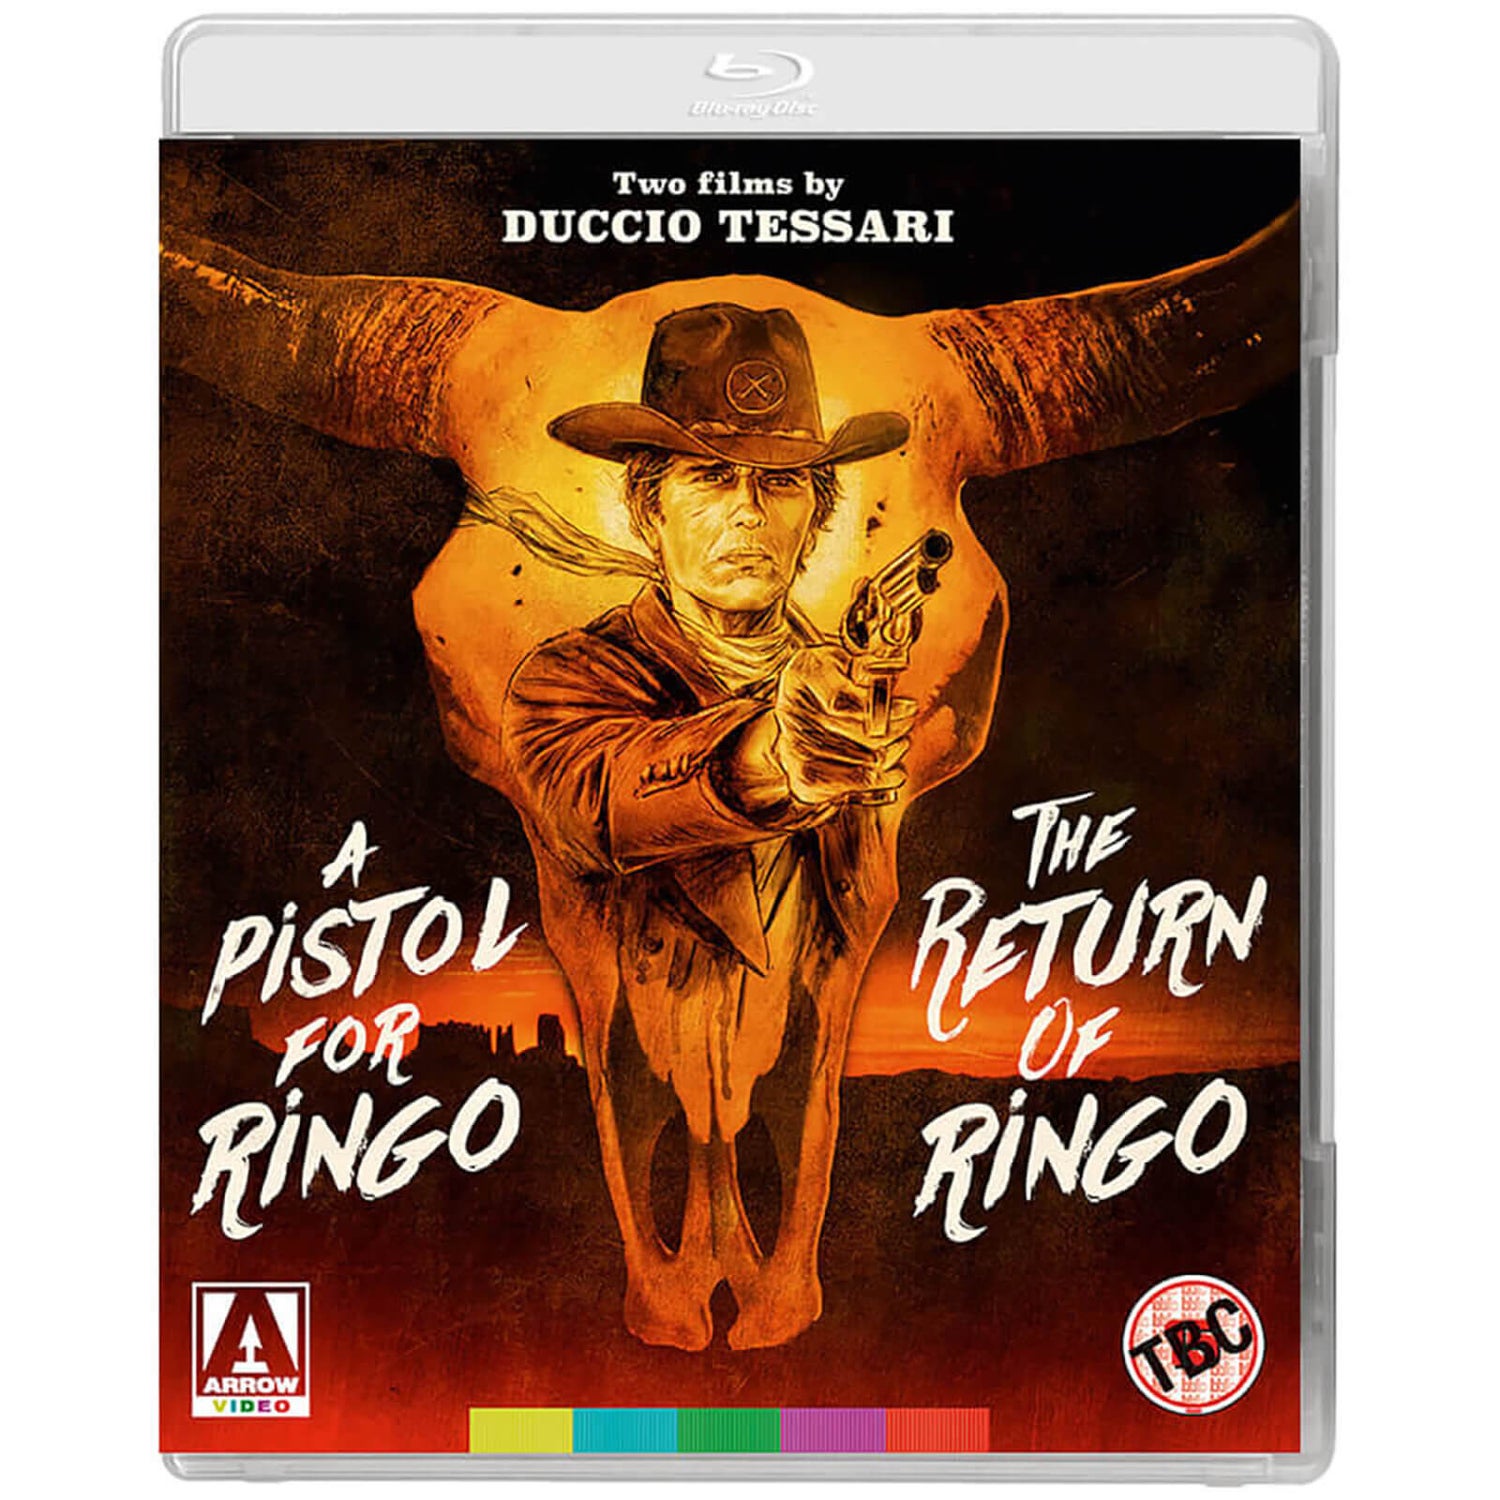 A Pistol for Ringo & The Return of Ringo: Two Films by Duccio Tessari